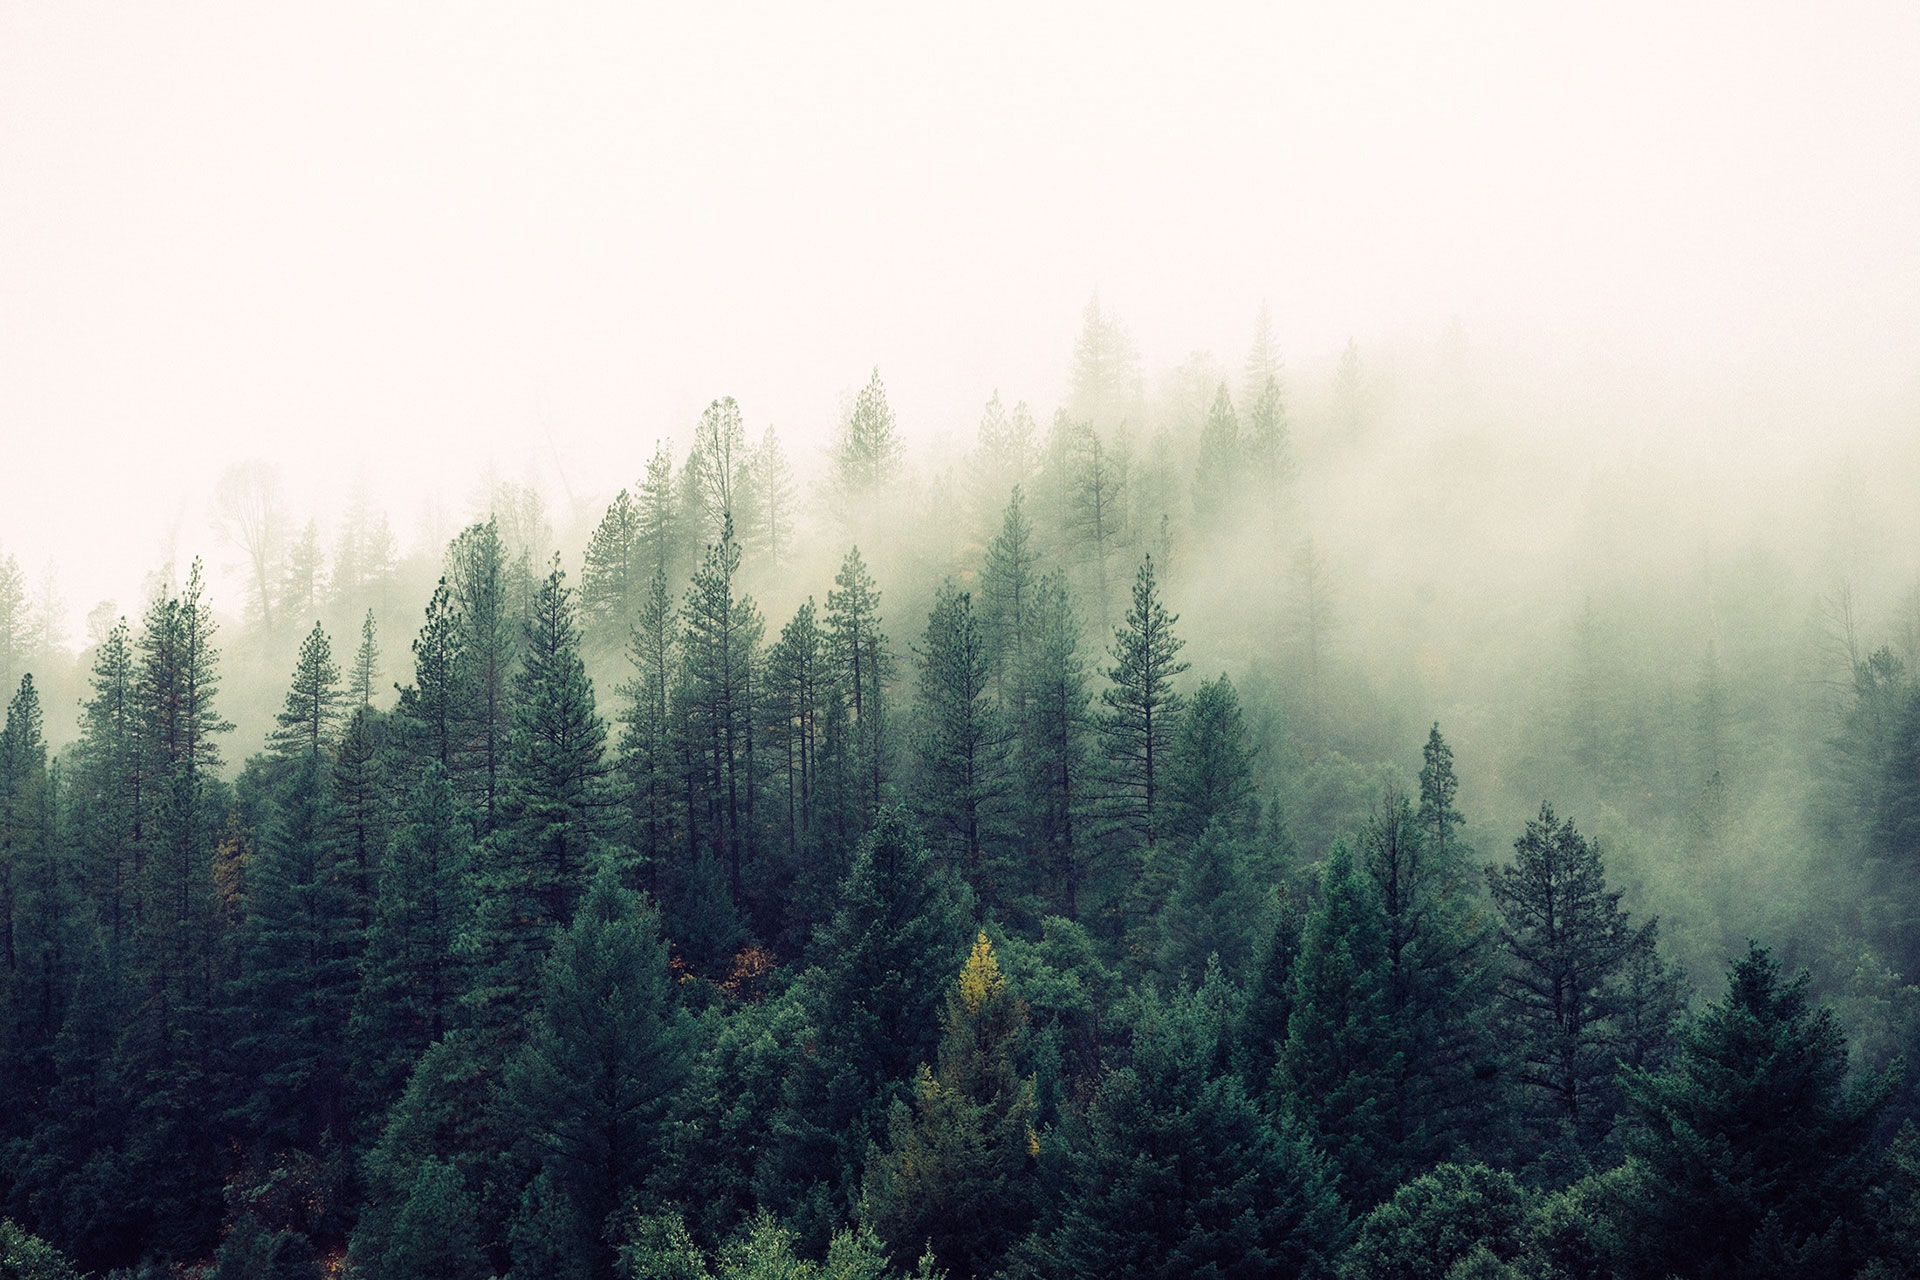 Quelle différence entre bois et forêt - La Terre du futur